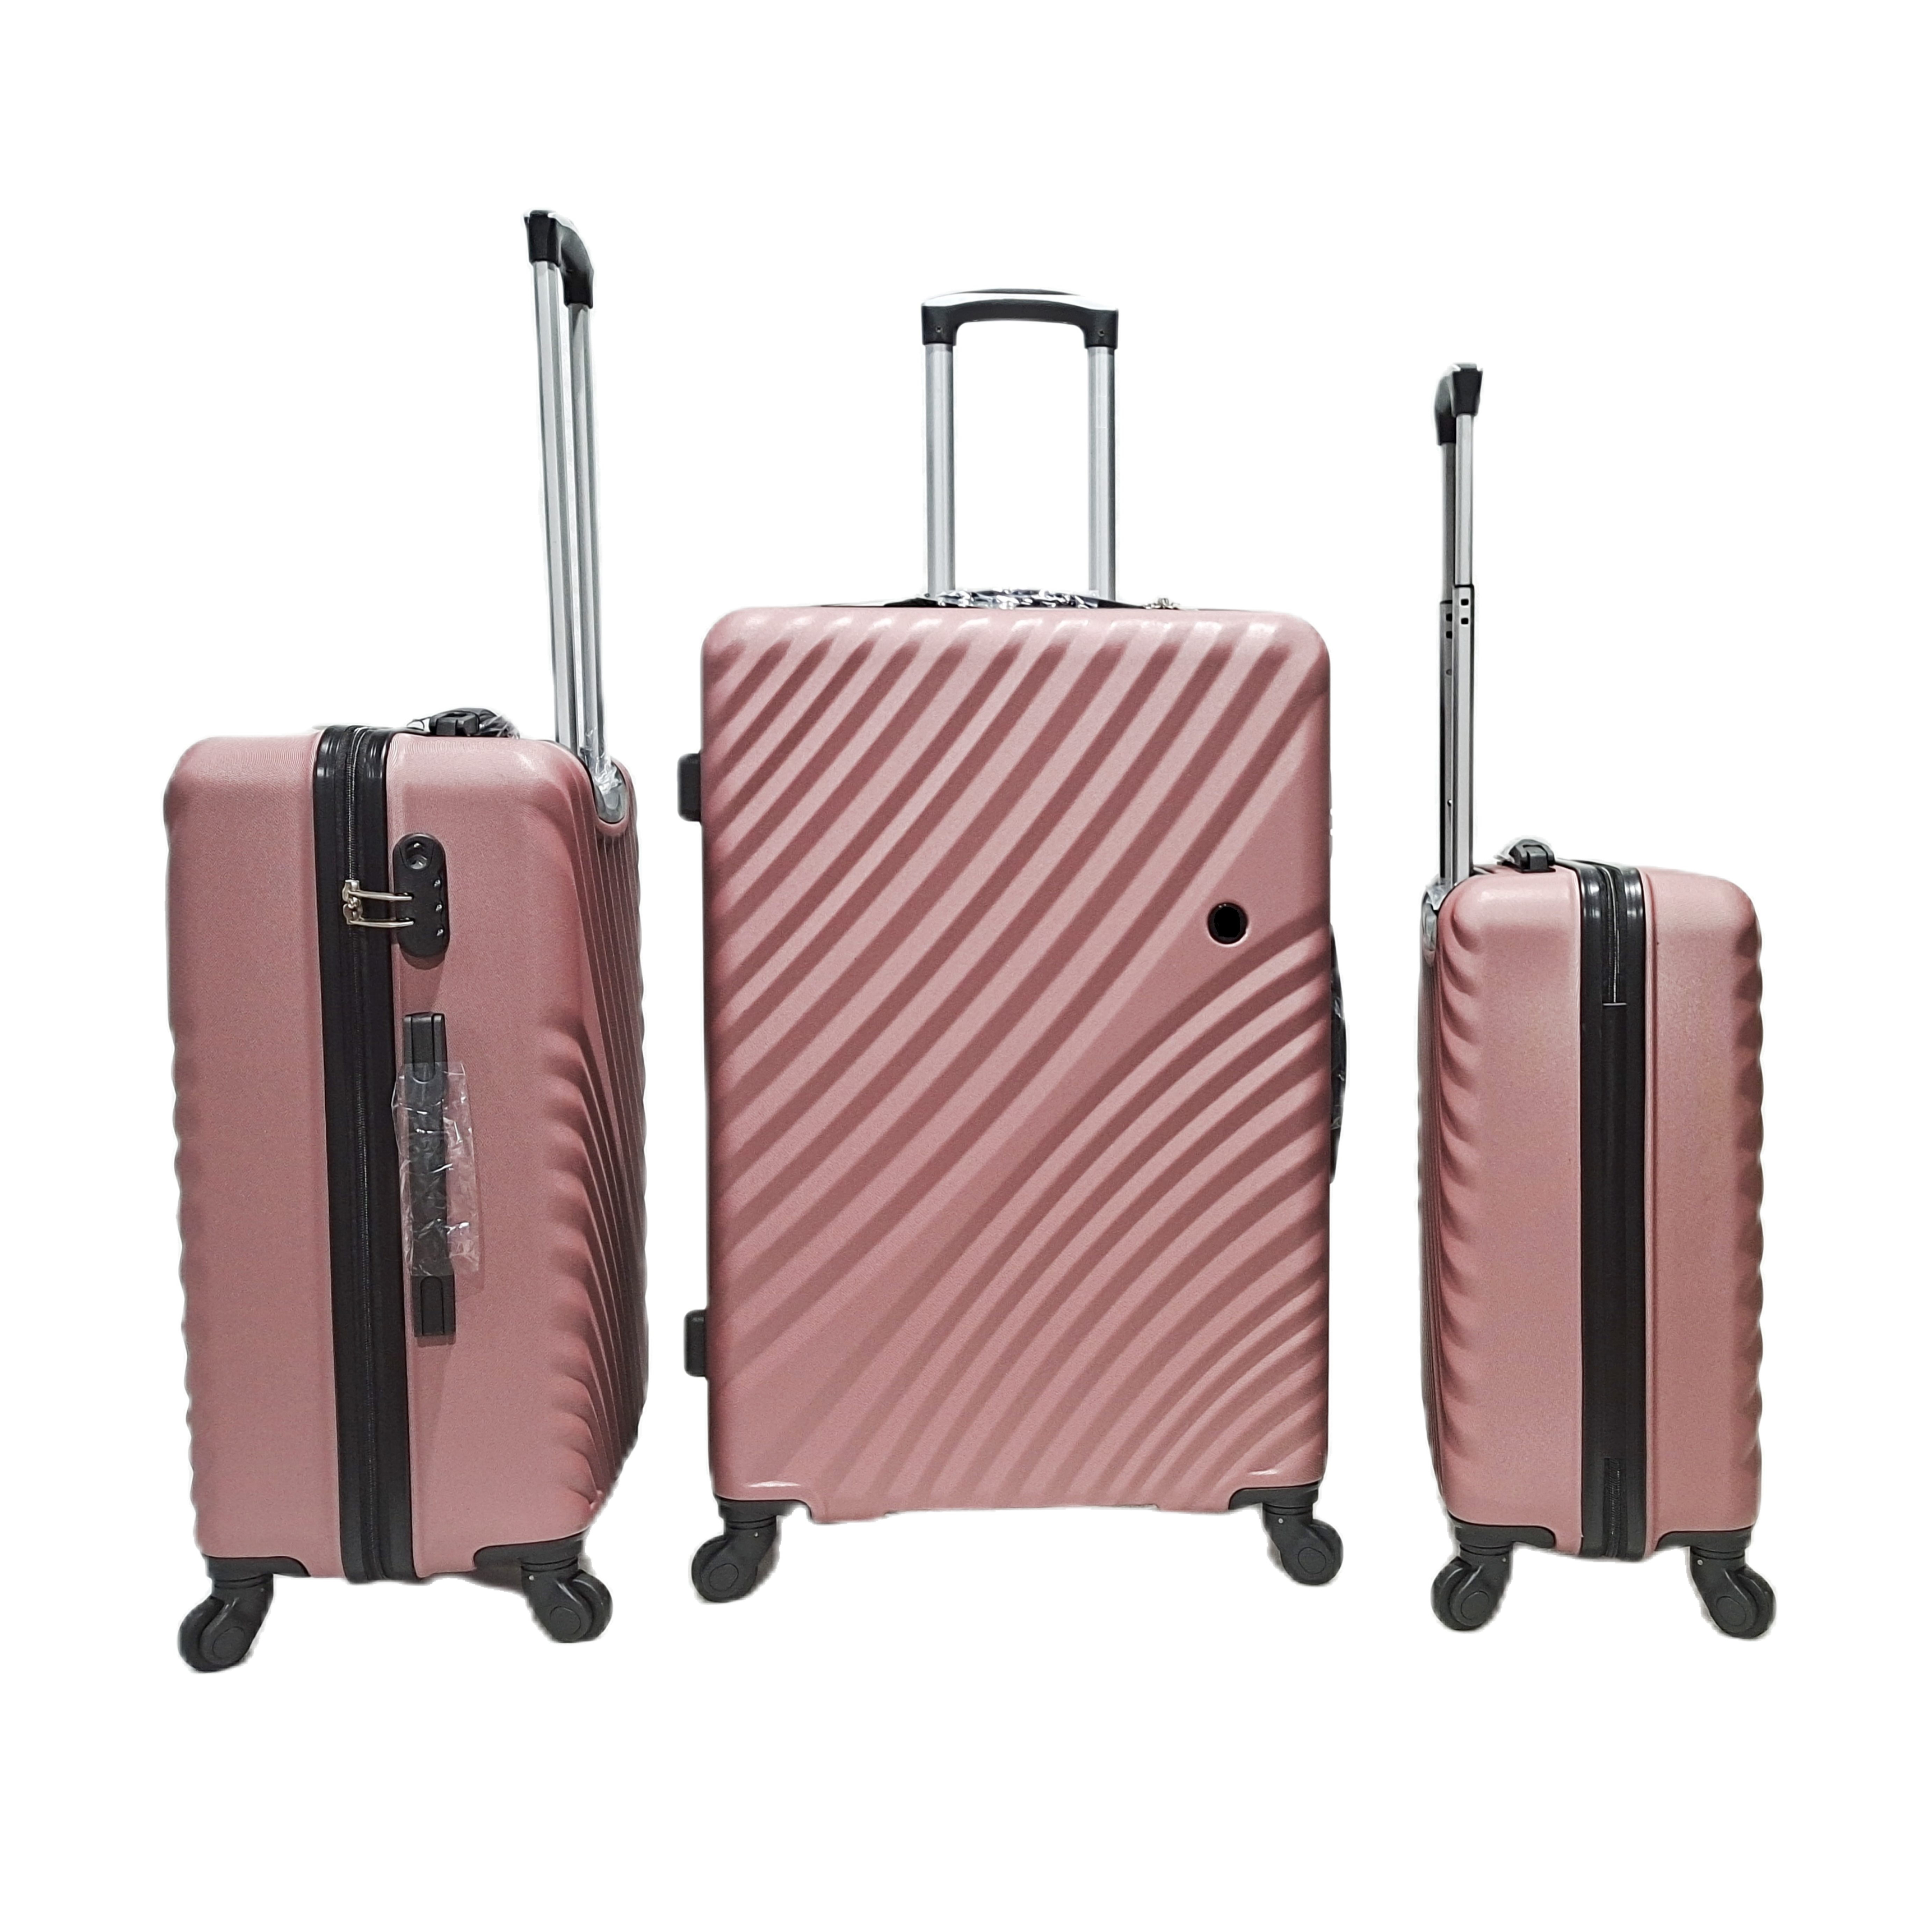 नया डिज़ाइन ABS सूटकेस लगेज ट्रेवल बैग 4 स्पिनर व्हील ट्रॉली सूटकेस सेट